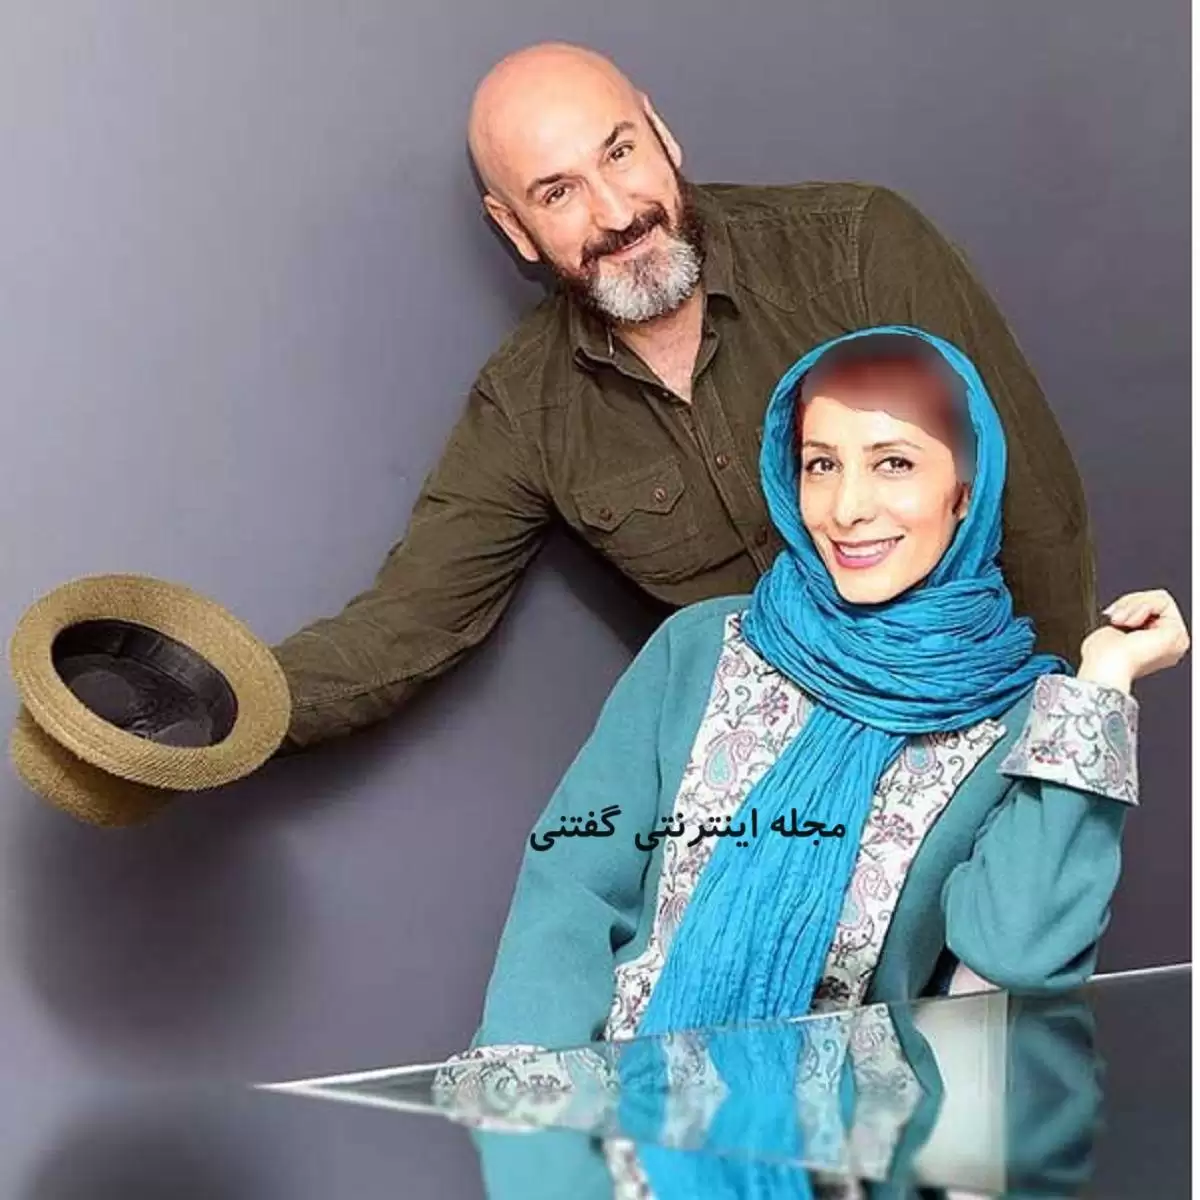 عکس زن زیبا و دختر جوان لاکچری صالح میرزا آقایی شازده مفخم سریال گیلدخت  +  بیوگرافی